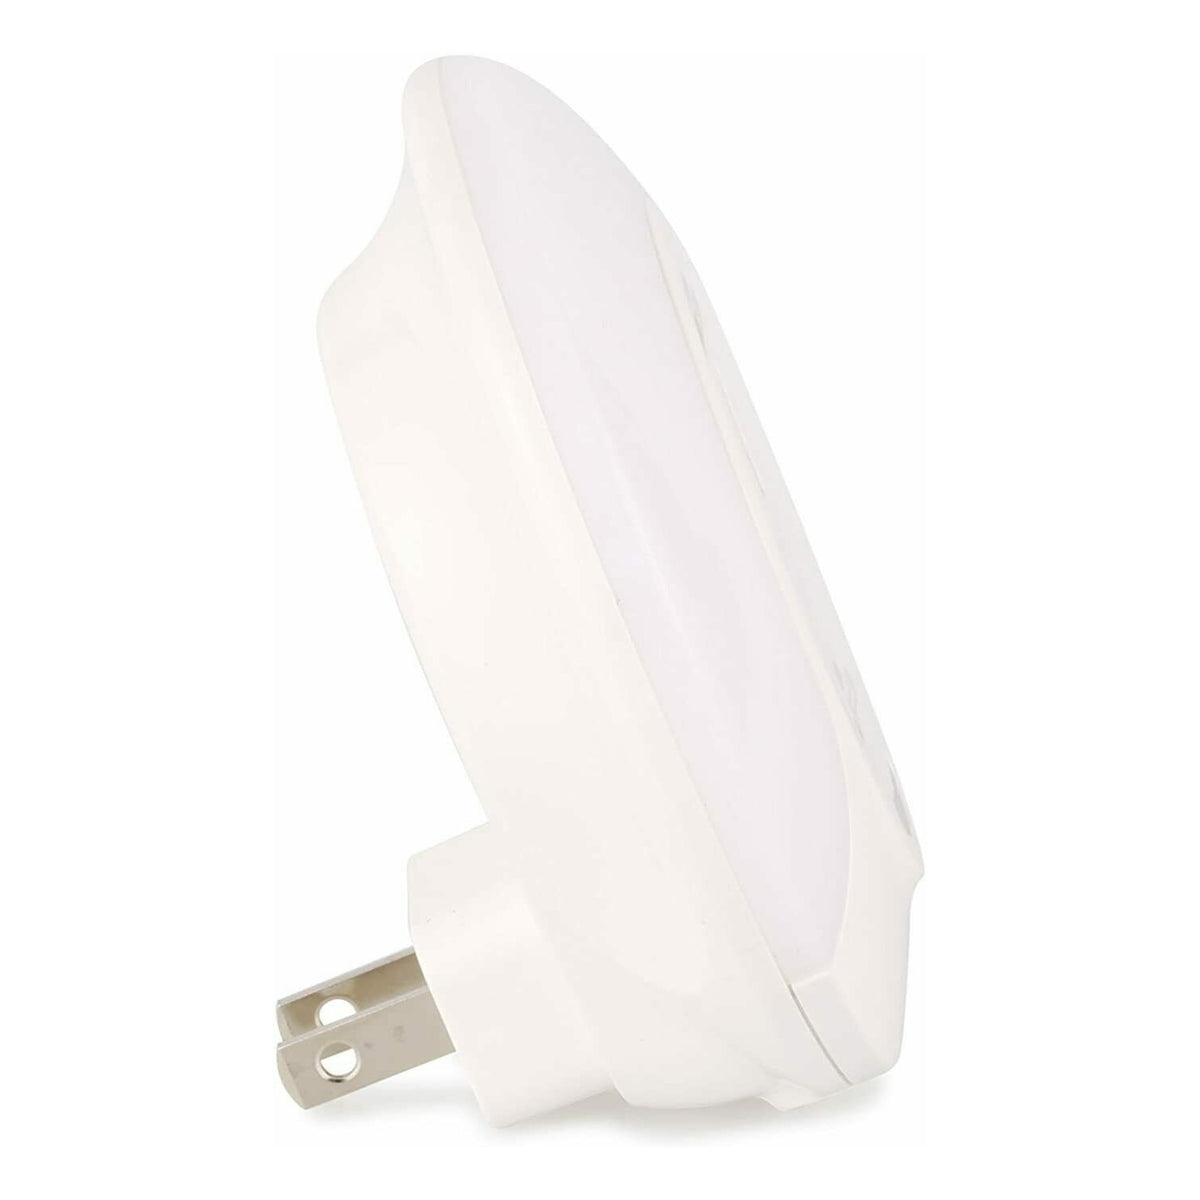 JUNELILY HARRINISA Double USB Port LED Night Light (Warm White)